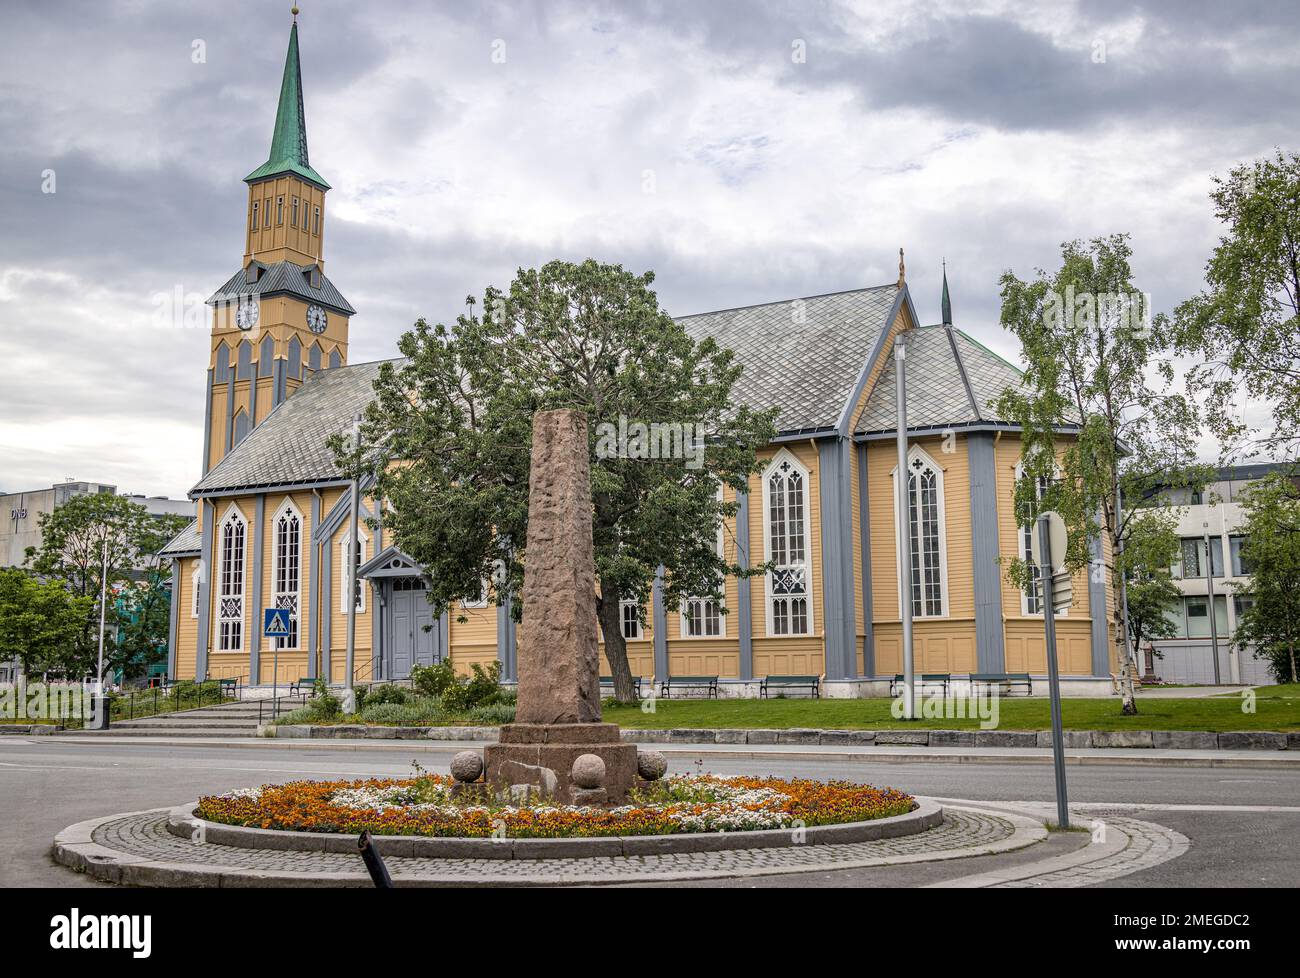 Tromso Cathedral (Tromsø domkirke), Tromso, Norway Stock Photo